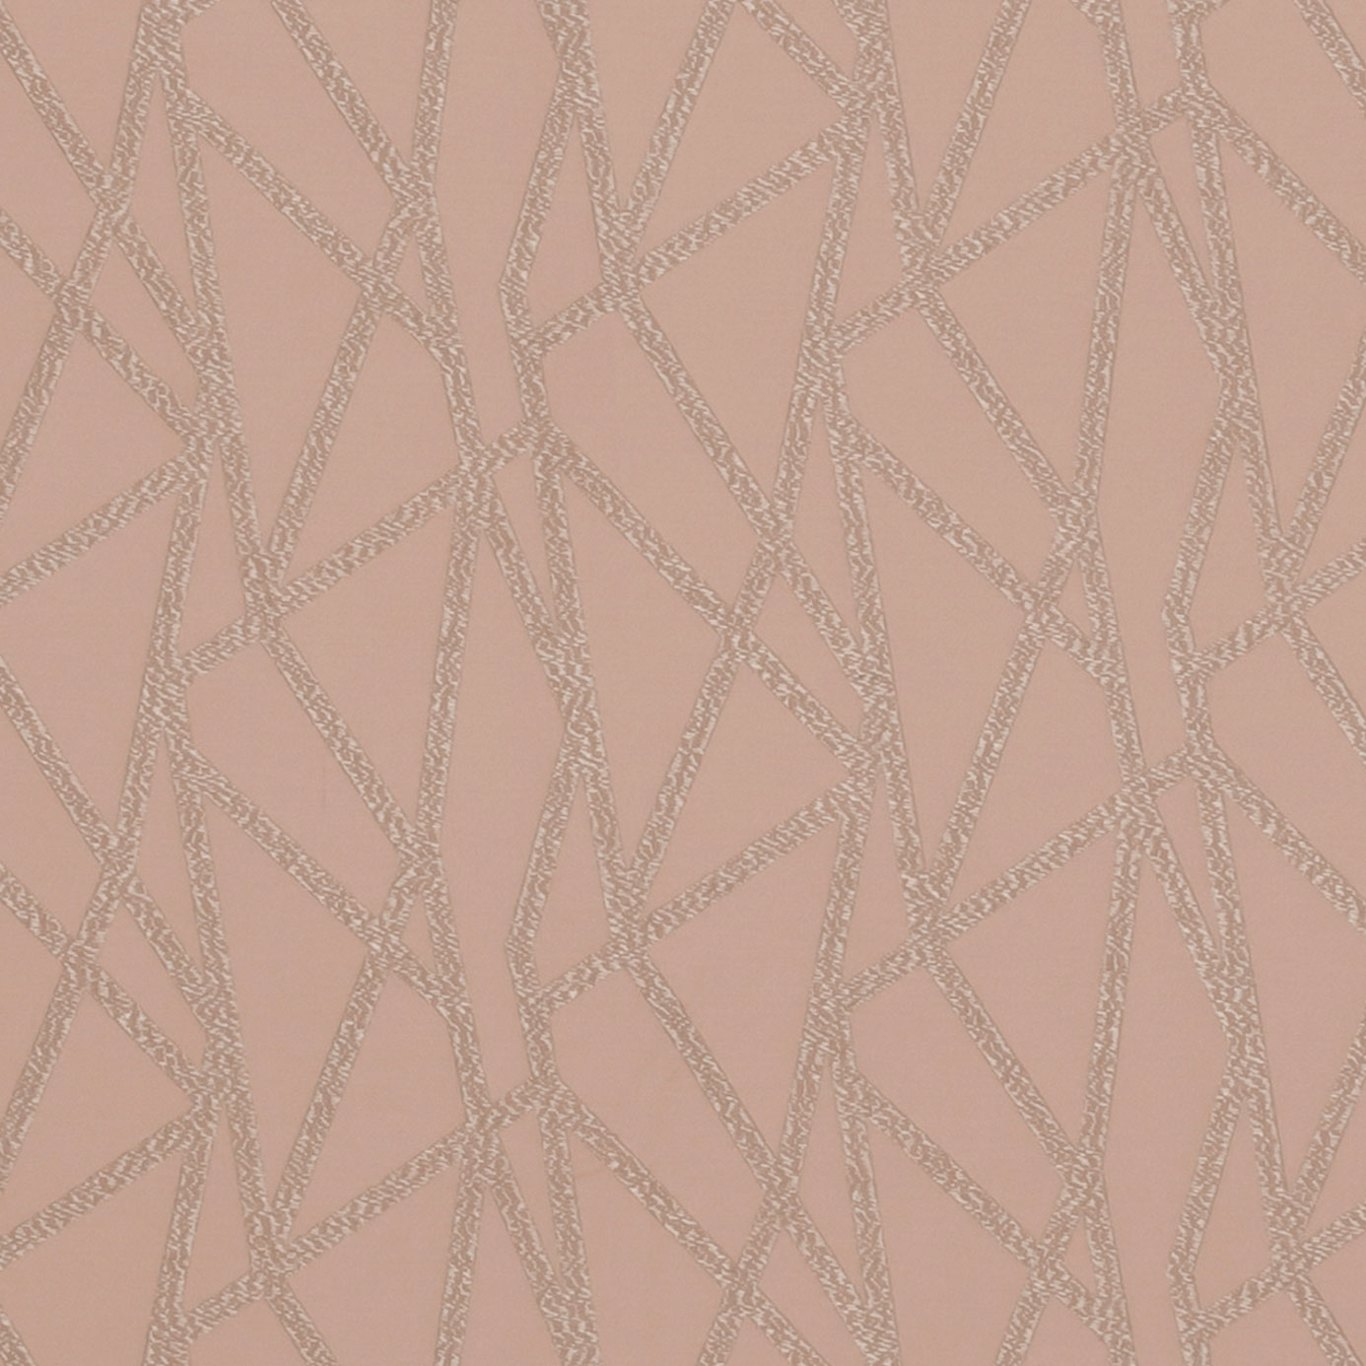 Geomo Blush Fabric by STG